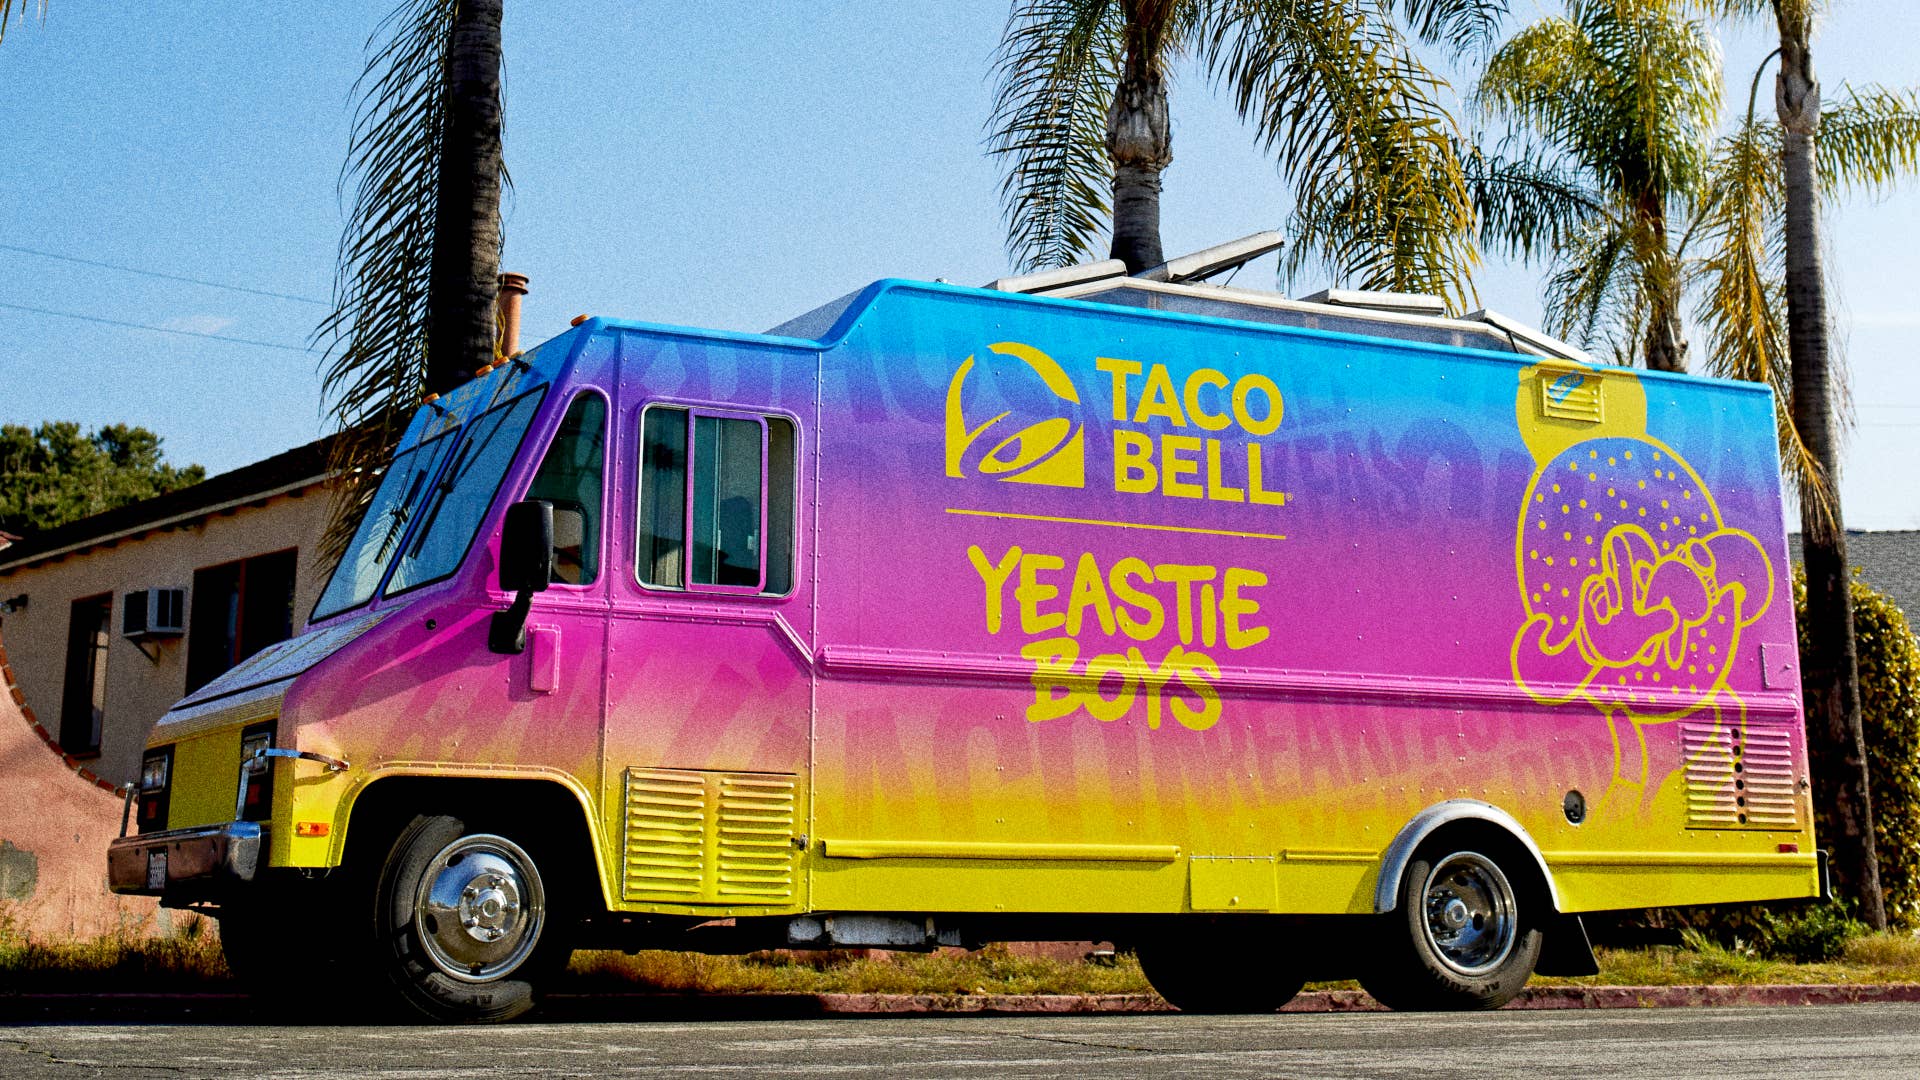 Taco Bell truck is seen in LA